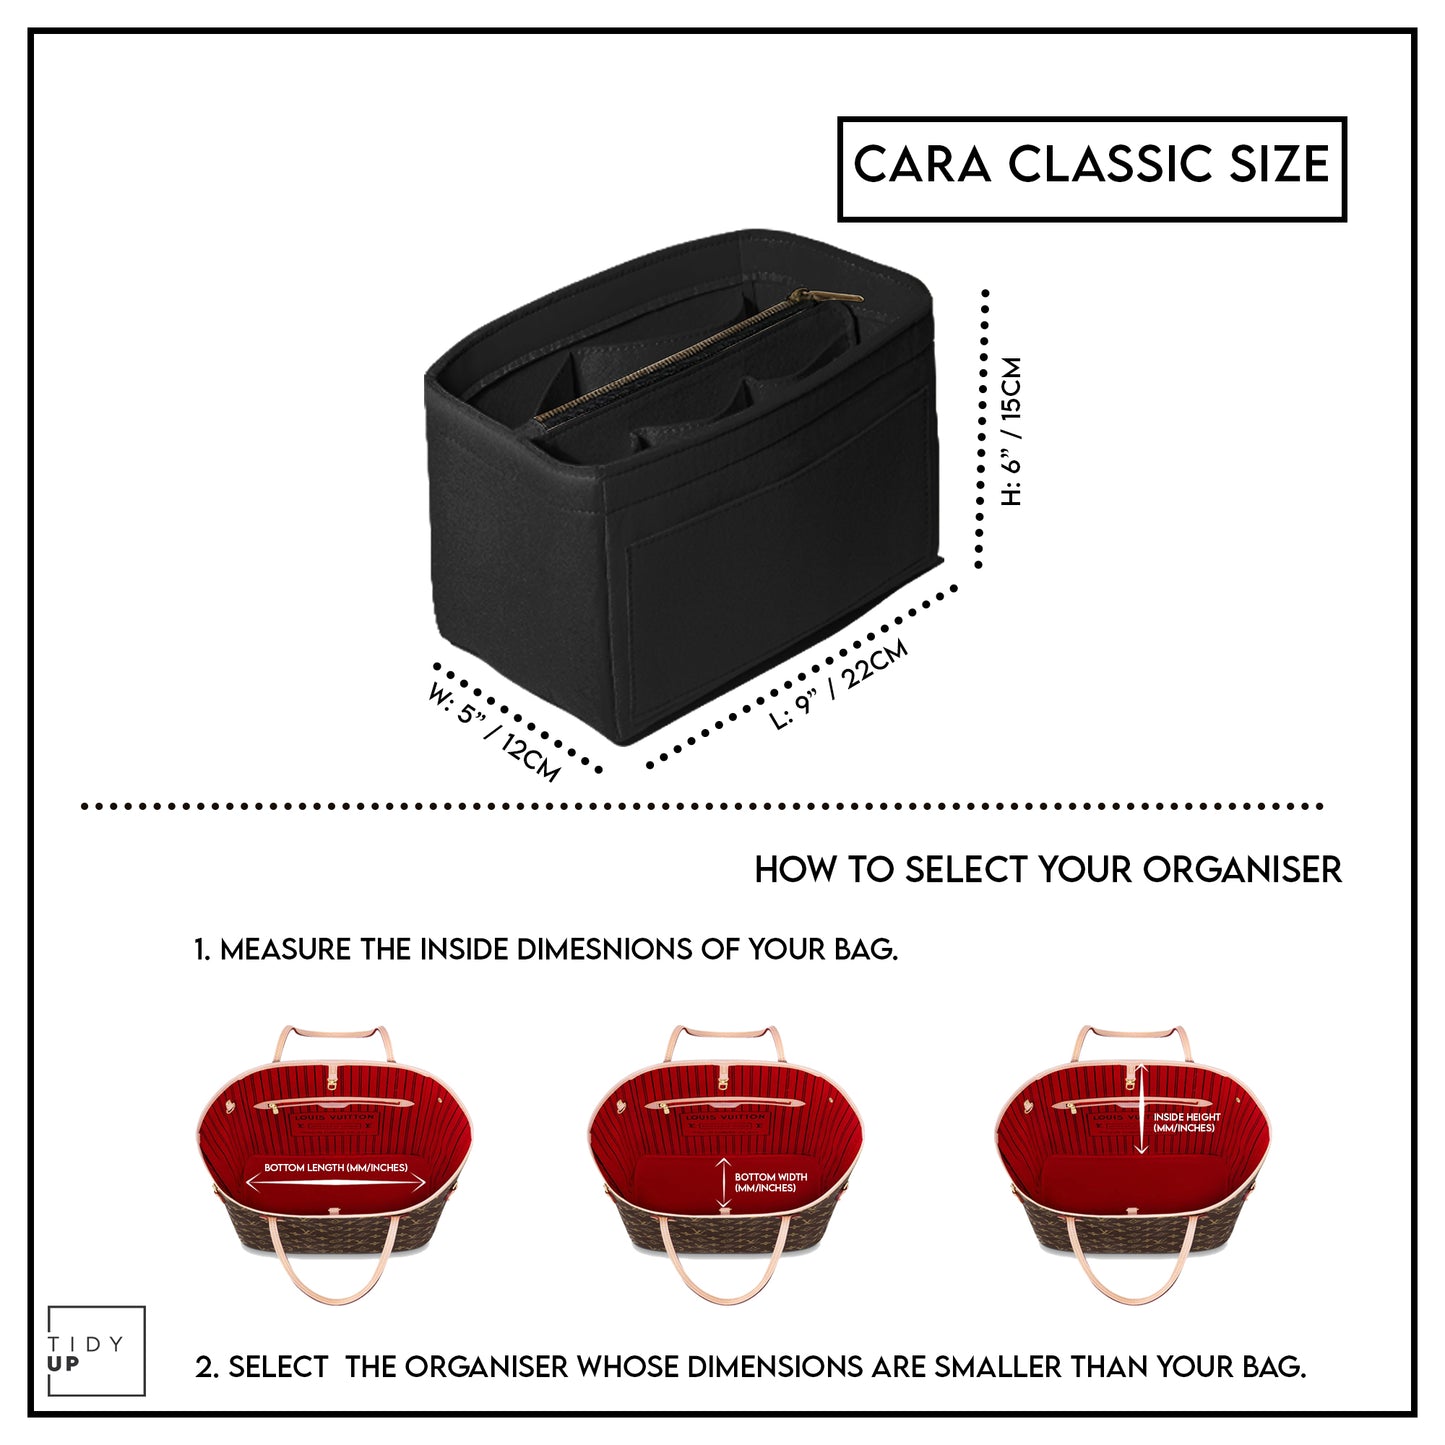 TidyUp Cara Classic Black Bag Organiser Dimensions